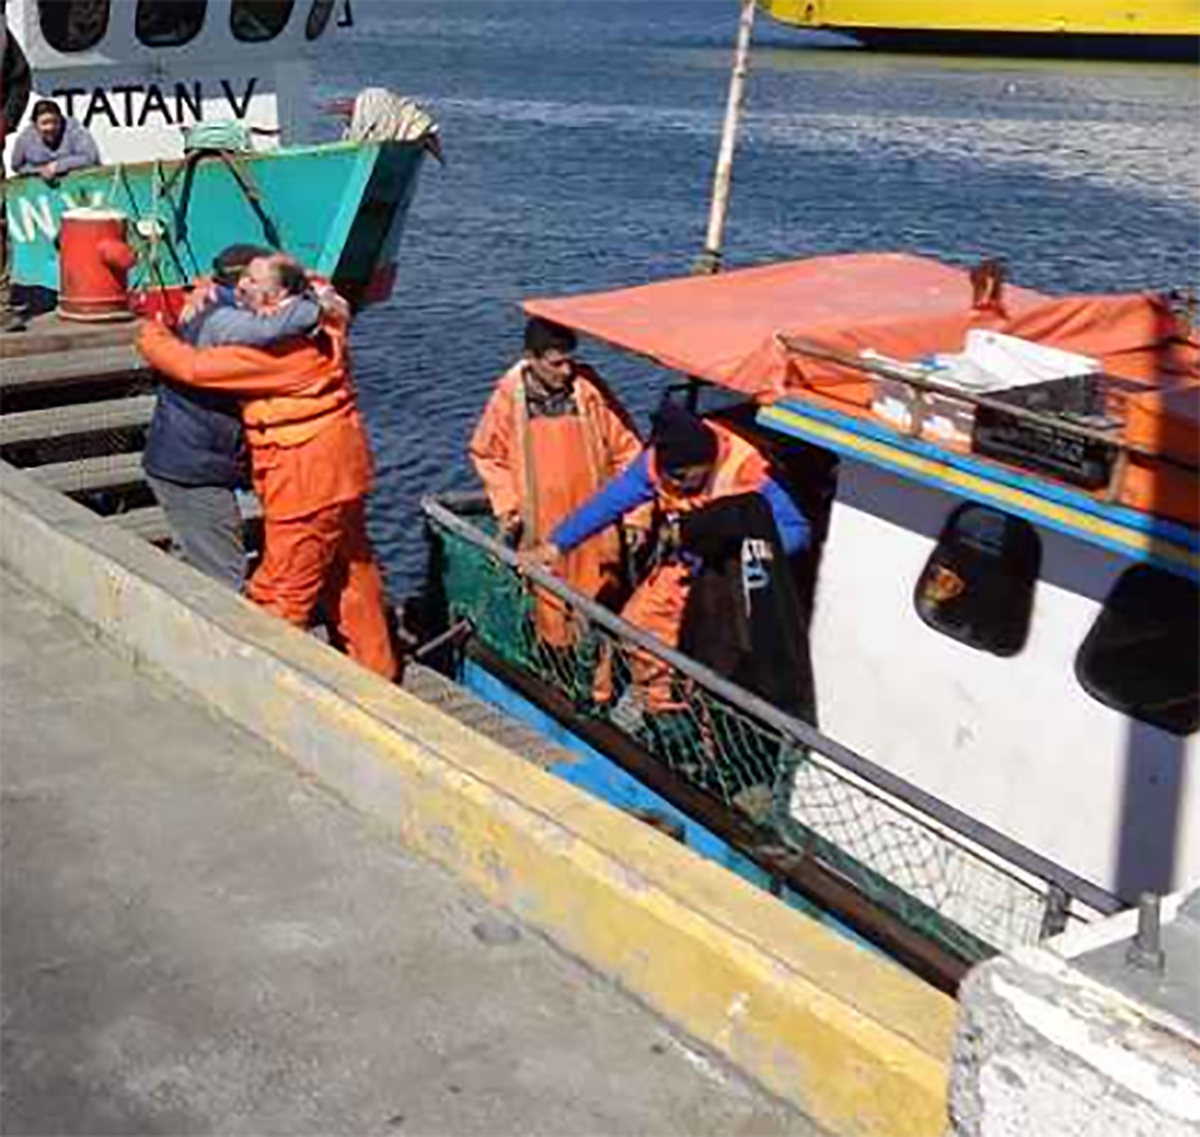 Cuatro pescadores ilesos tras hundimiento en aguas de la ciudad de Porvenir